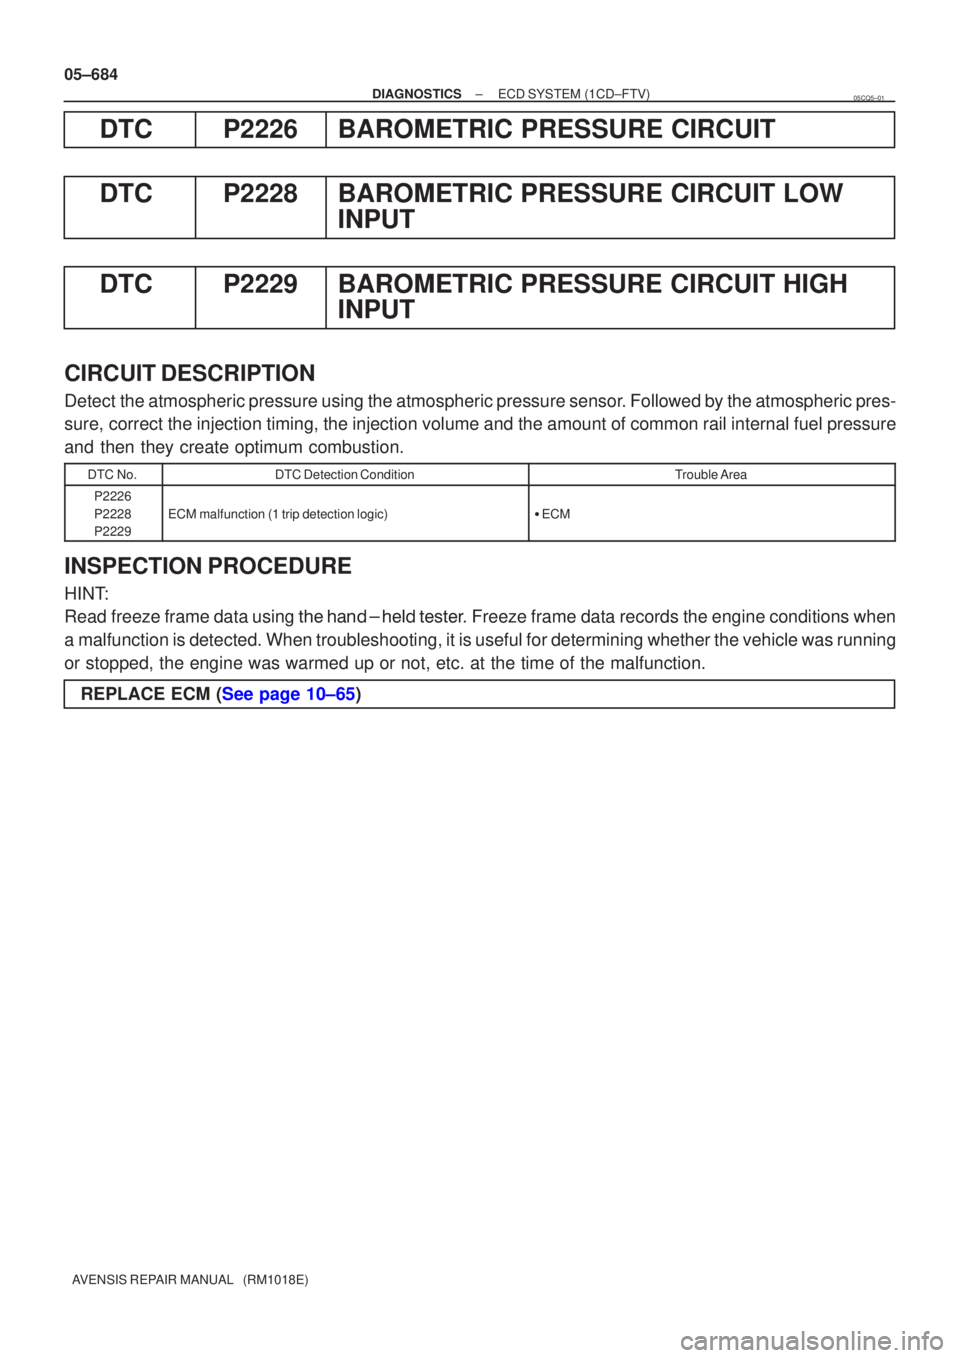 TOYOTA AVENSIS 2005  Service Repair Manual 05±684
±
DIAGNOSTICS ECD SYSTEM(1CD±FTV)
AVENSIS REPAIR MANUAL   (RM1018E)
DTCP2226BAROMETRIC PRESSURE CIRCUIT
DTCP2228BAROMETRIC PRESSURE CIRCUIT LOW INPUT
DTCP2229BAROMETRIC PRESSURE CIRCUIT HIGH